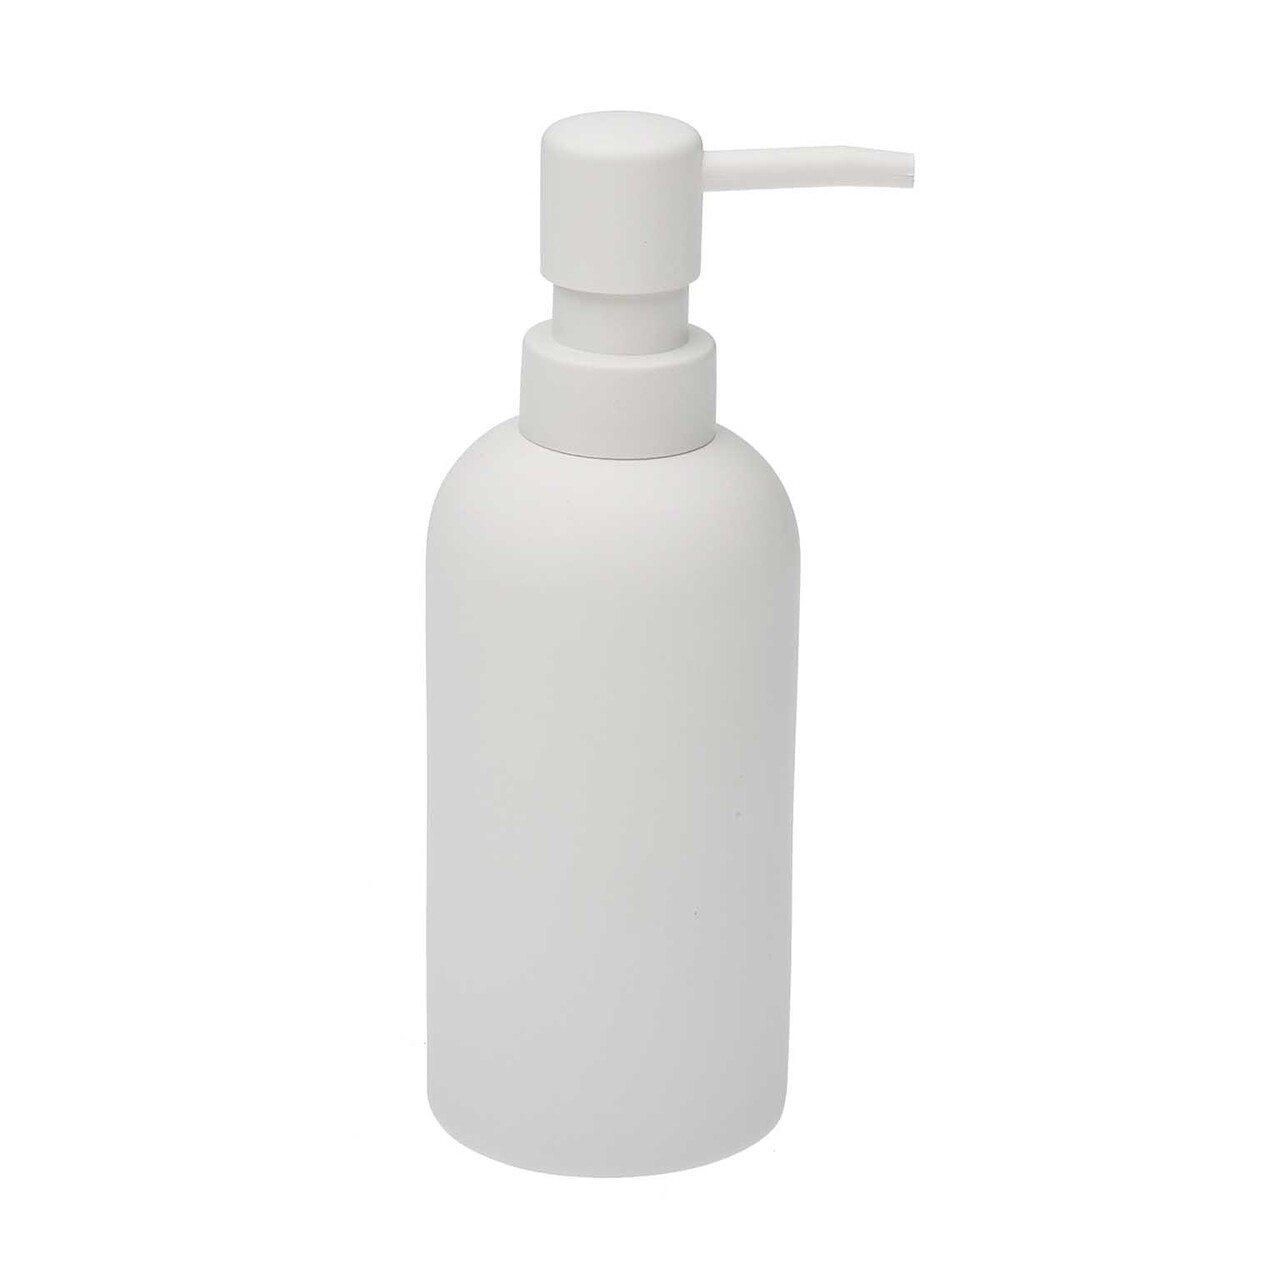 Allen Folyékony szappan adagoló, Versa, Ø6.5x18.5 cm, poligyanta, fehér